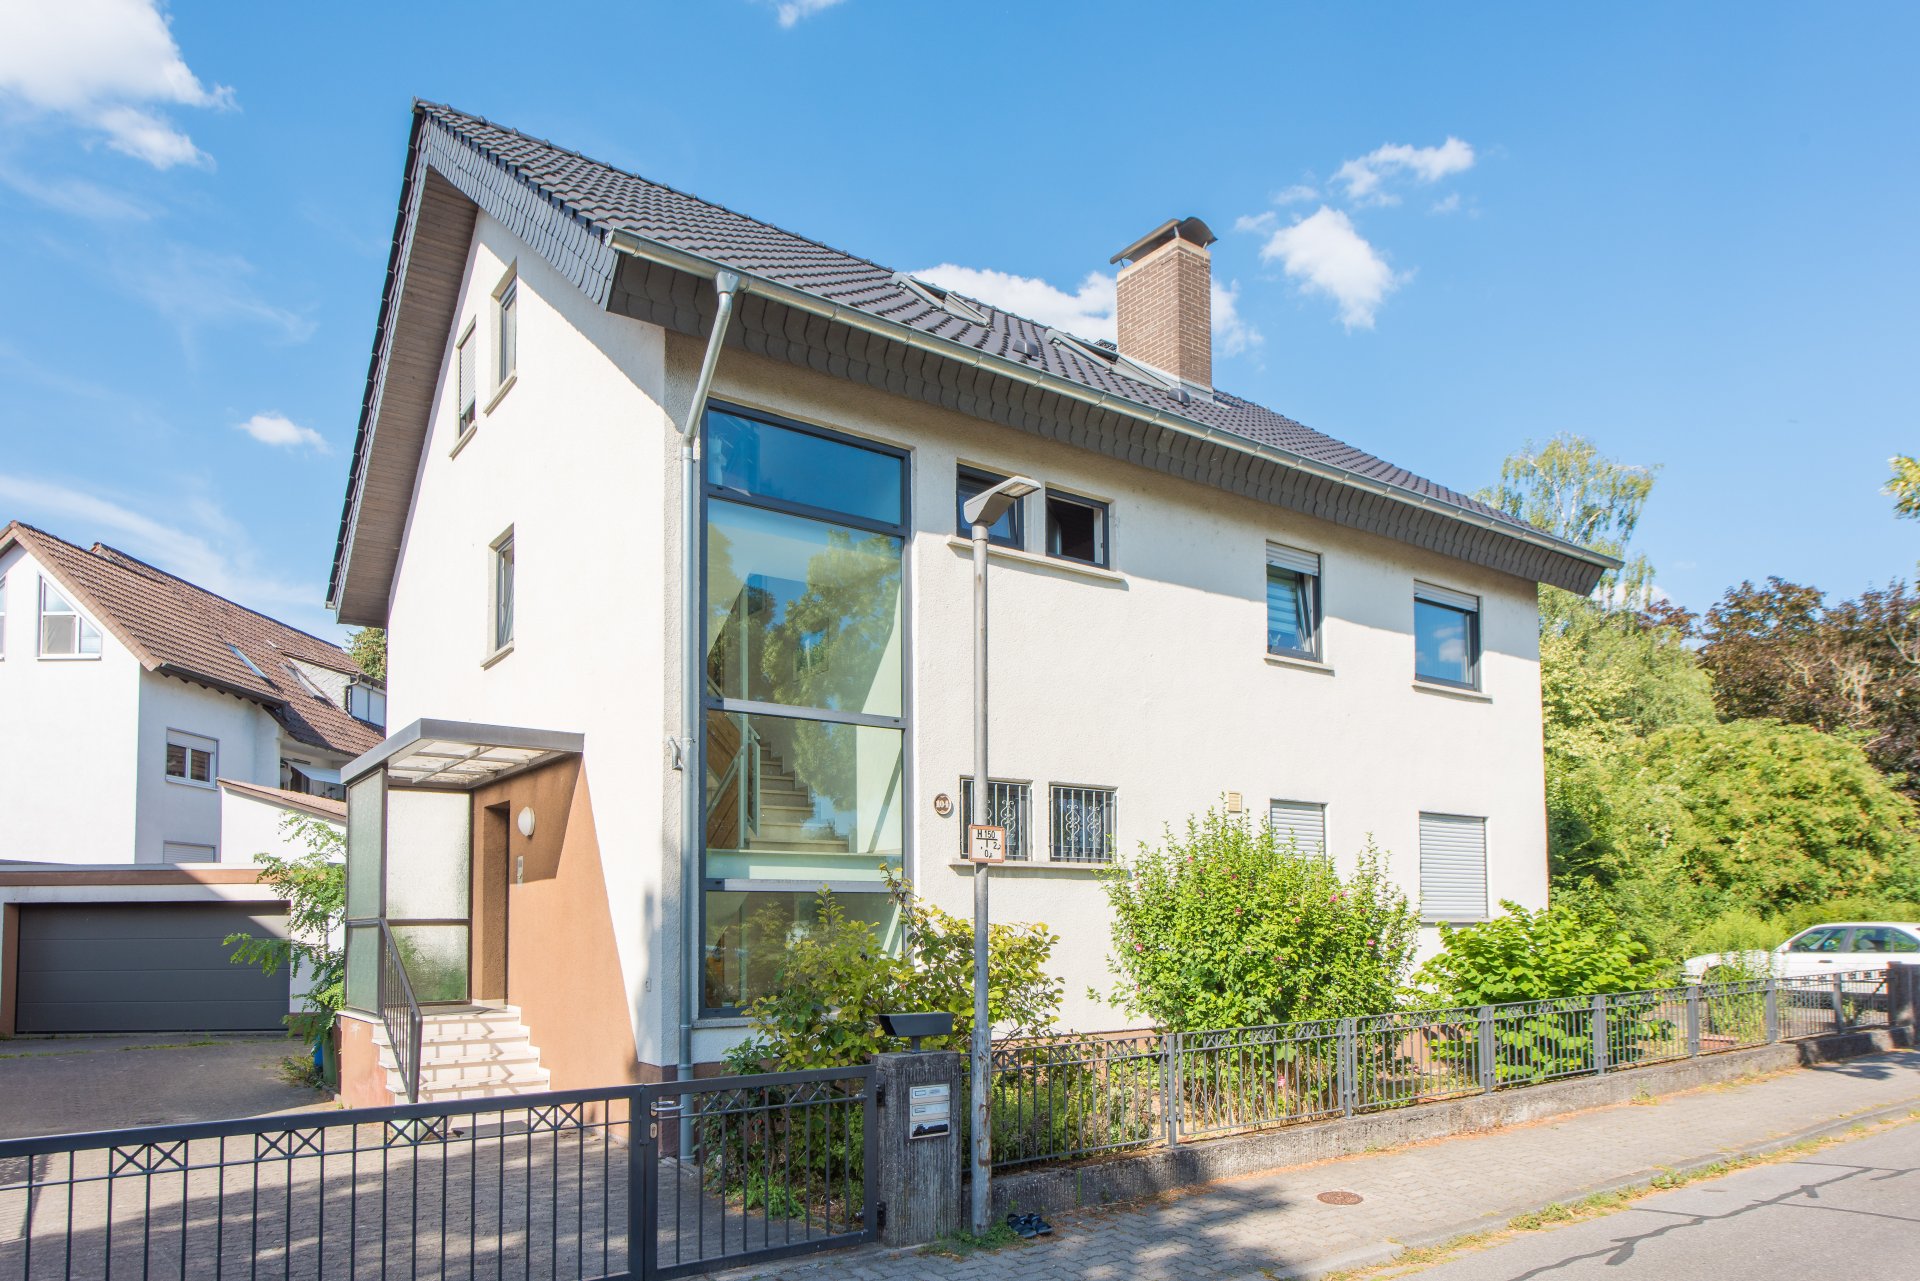 Bensheim - 3 Familienhaus zum selbst nutzen, oder Kapitalanlage, umfangreich saniert, schöne Grundrisse